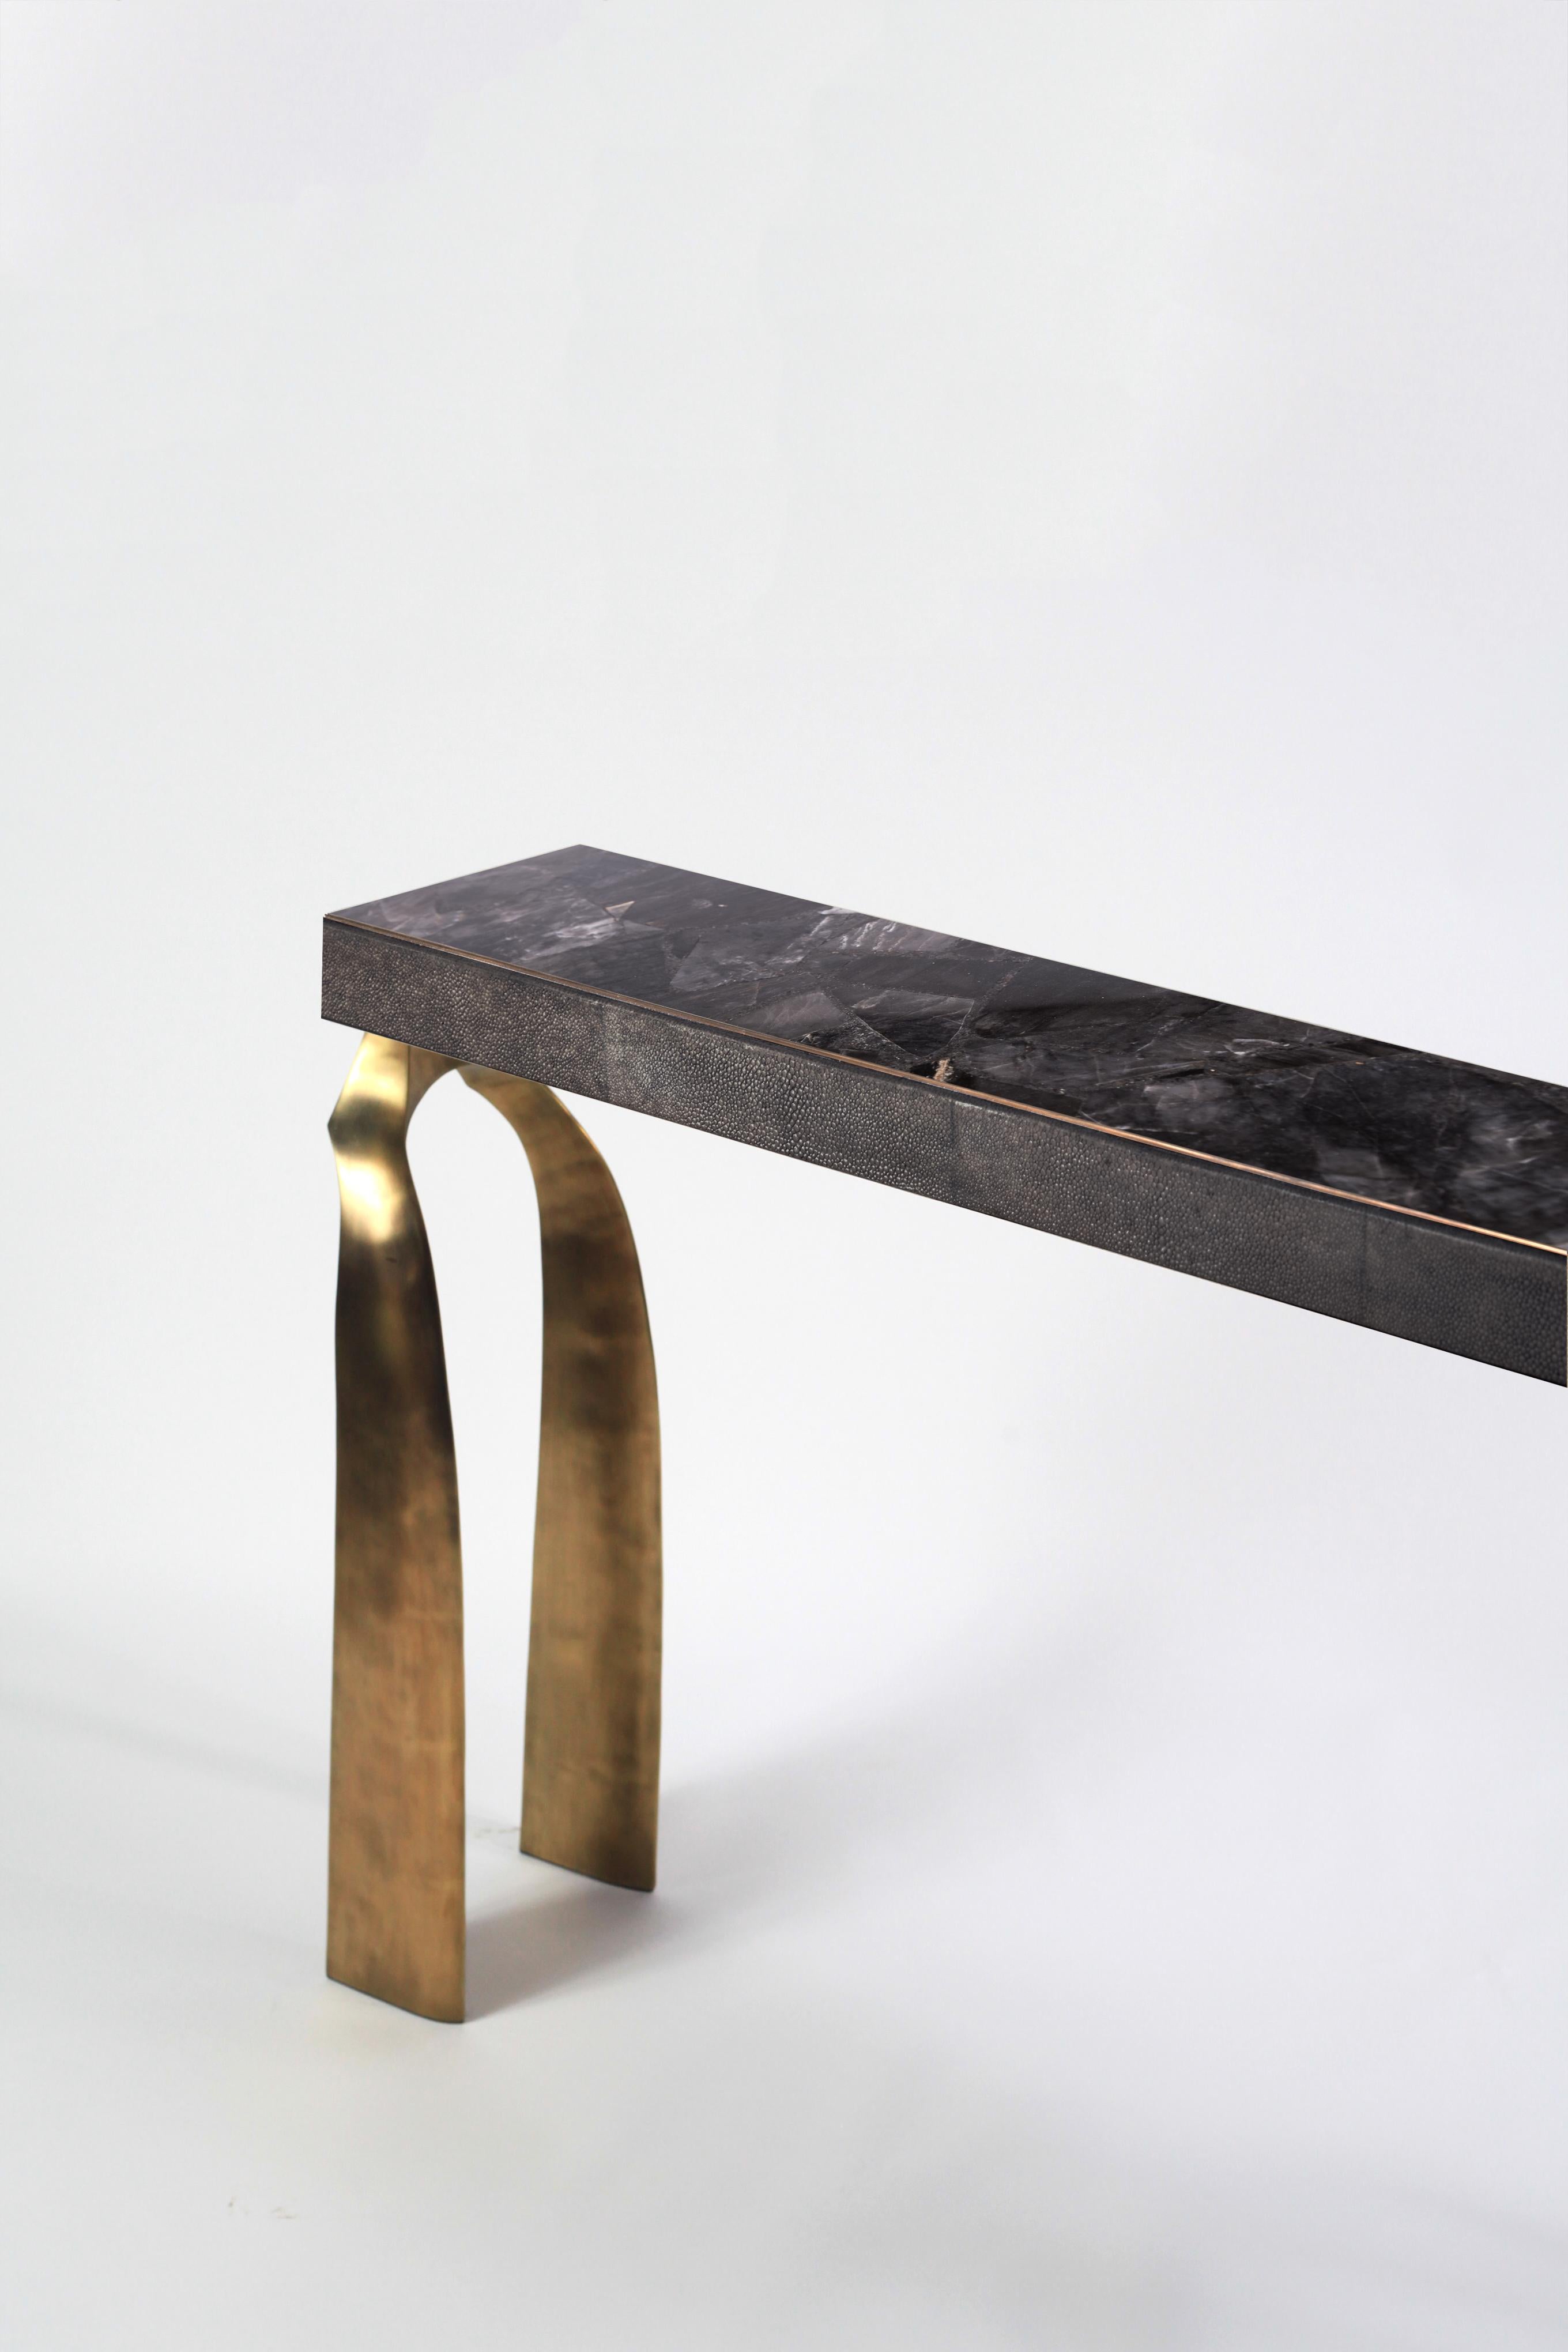 La table console Galaxy est à la fois spectaculaire et organique grâce à son design unique. Le plateau en quartz noir, avec des bordures incrustées de galuchat noir, repose sur une paire de pieds éthérés et sculpturaux en laiton bronze-patina. Cette